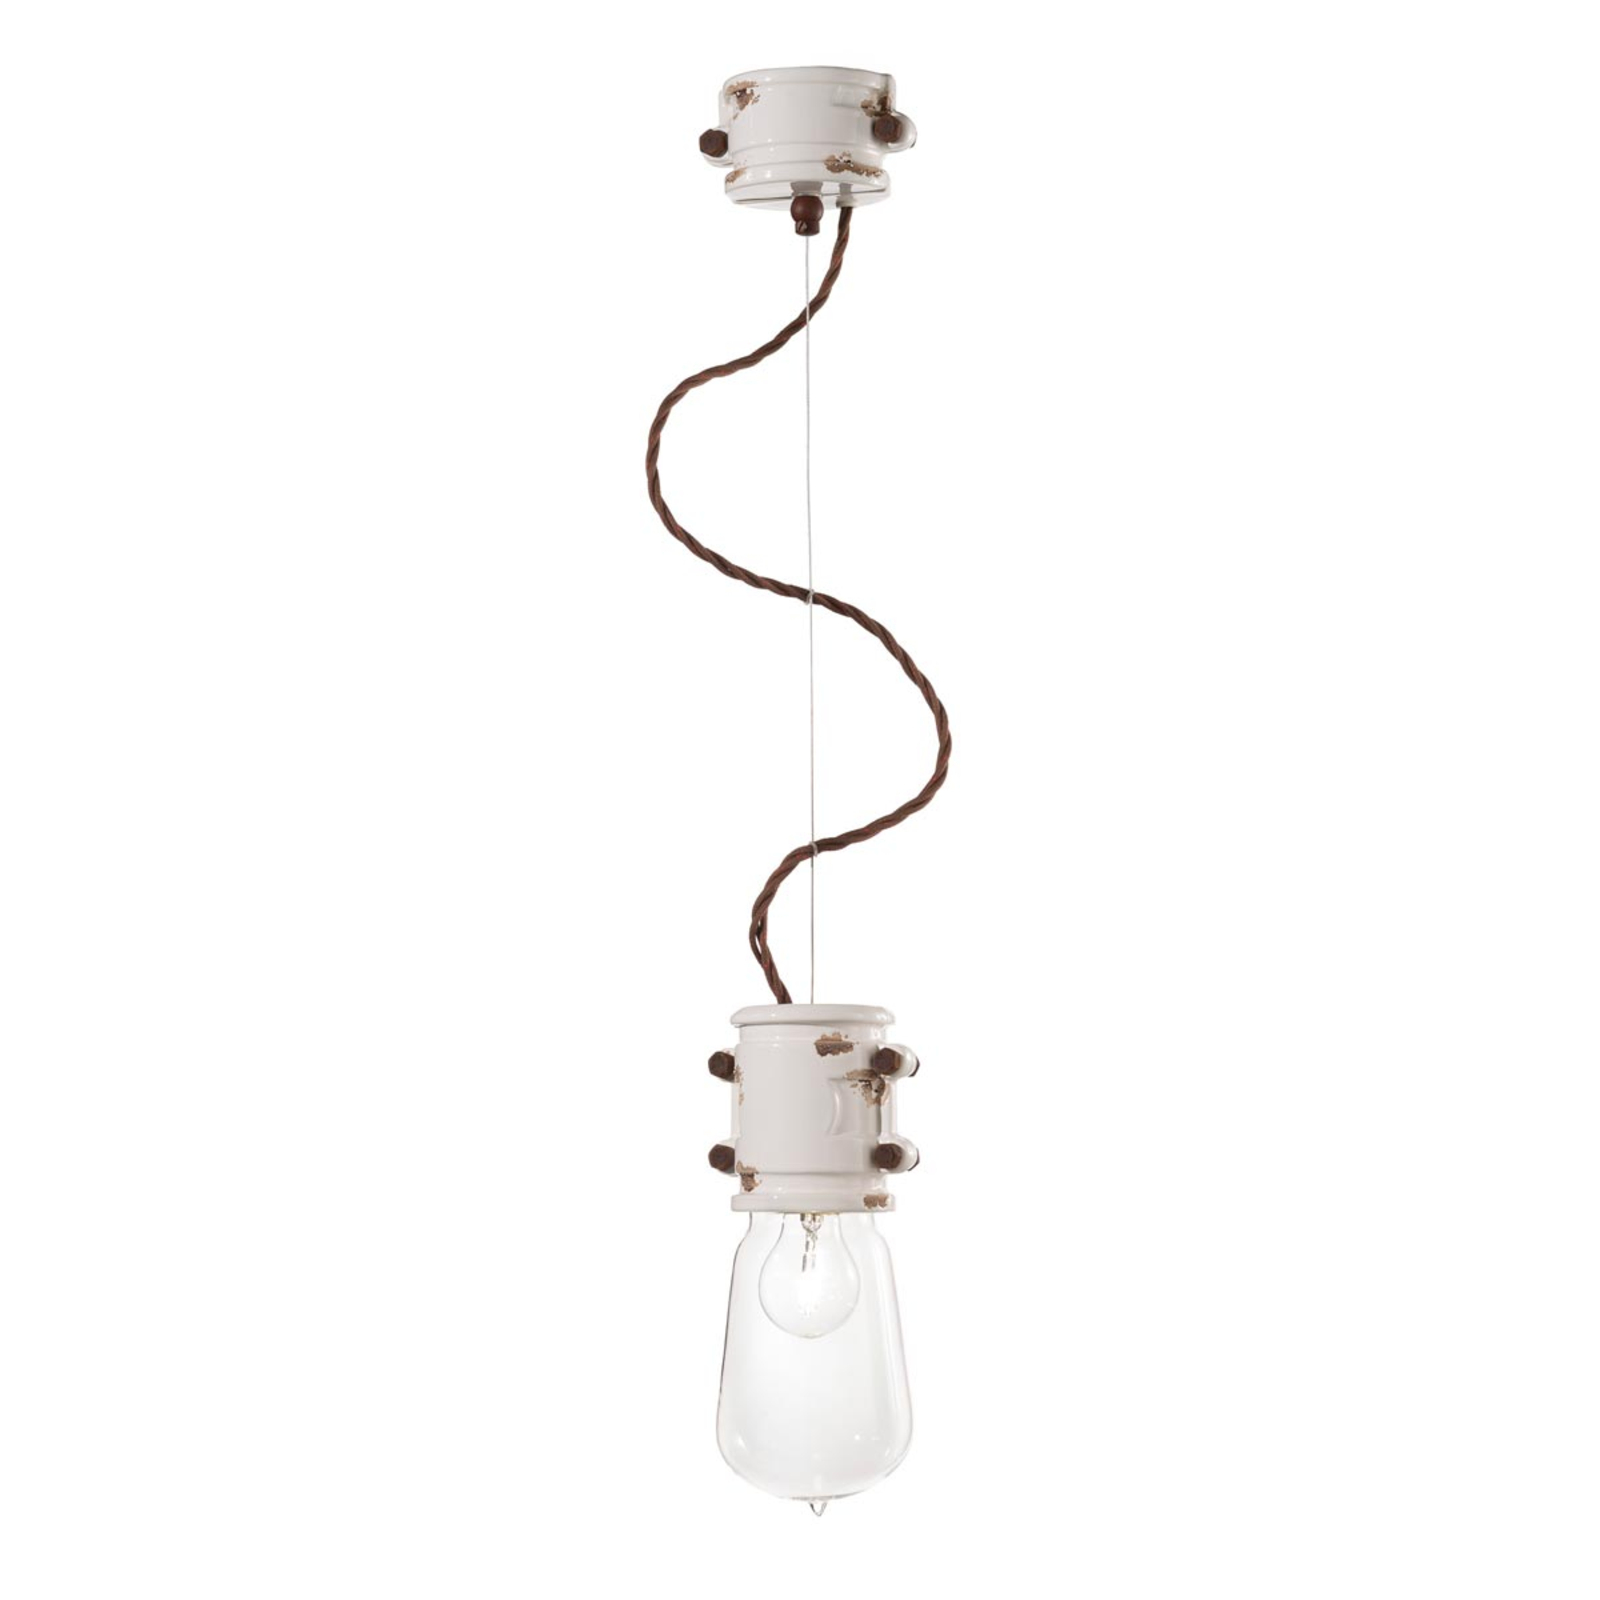 Witte hanglamp Nicolo in een minimalistisch ontwerp